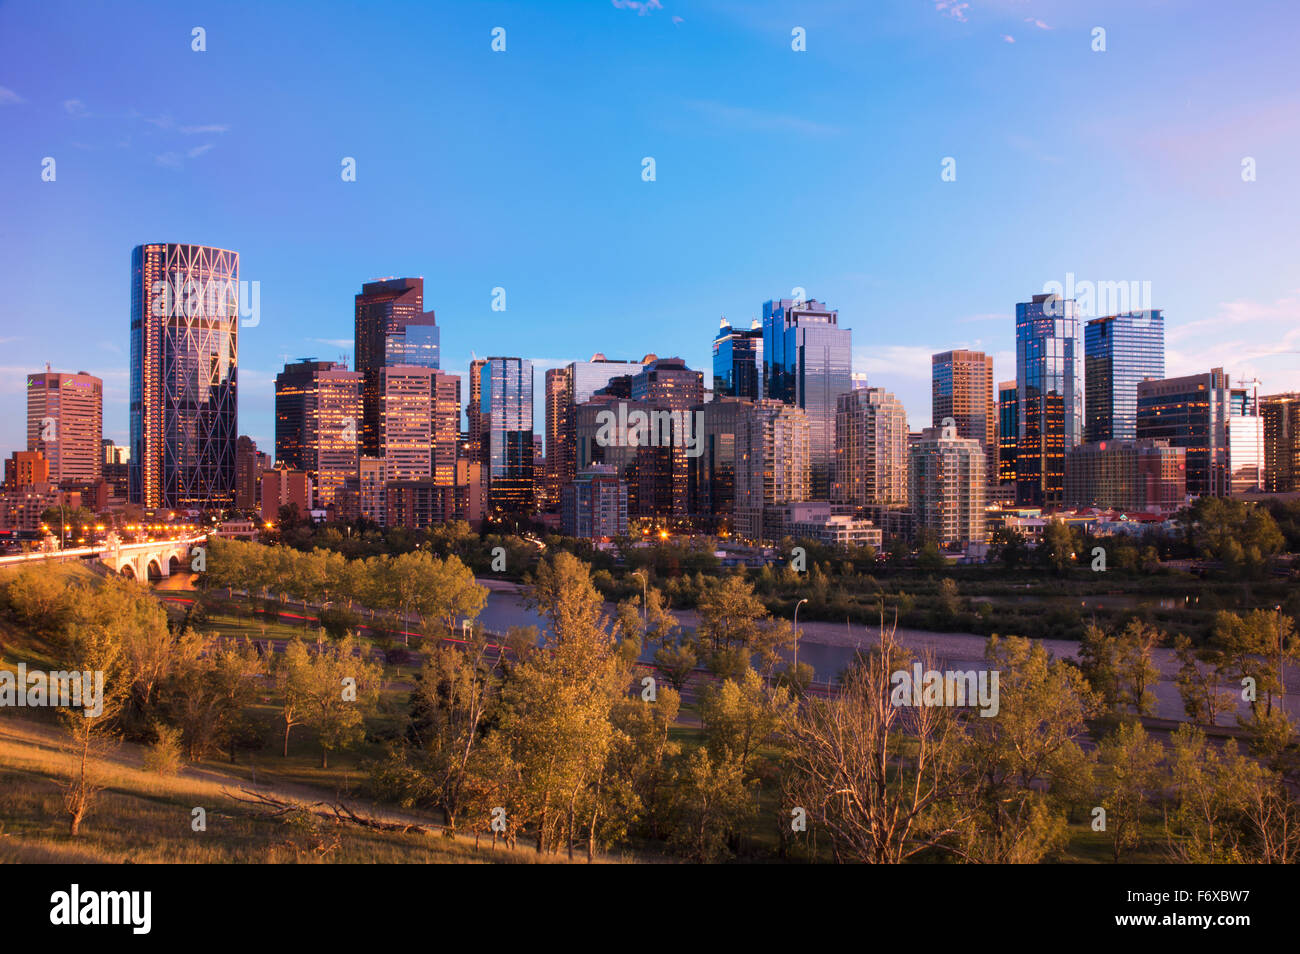 Ville moderne avec des gratte-ciel au coucher du soleil ; Calgary, Alberta, Canada Banque D'Images